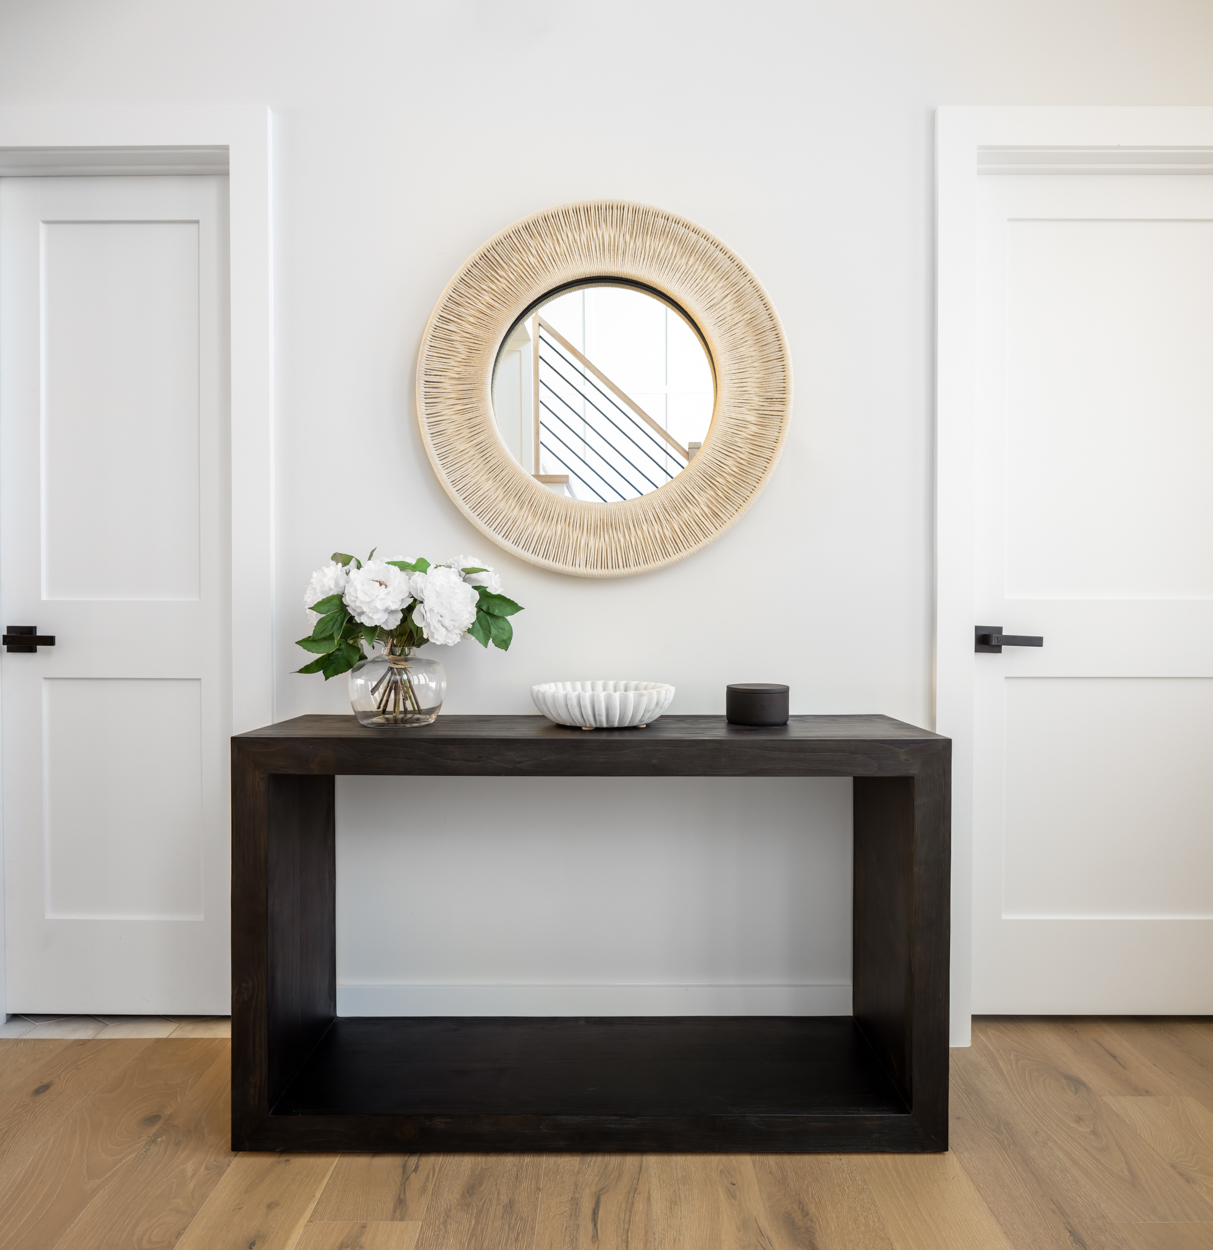 Side Table Entryway Interior Design Decor Round Mirror